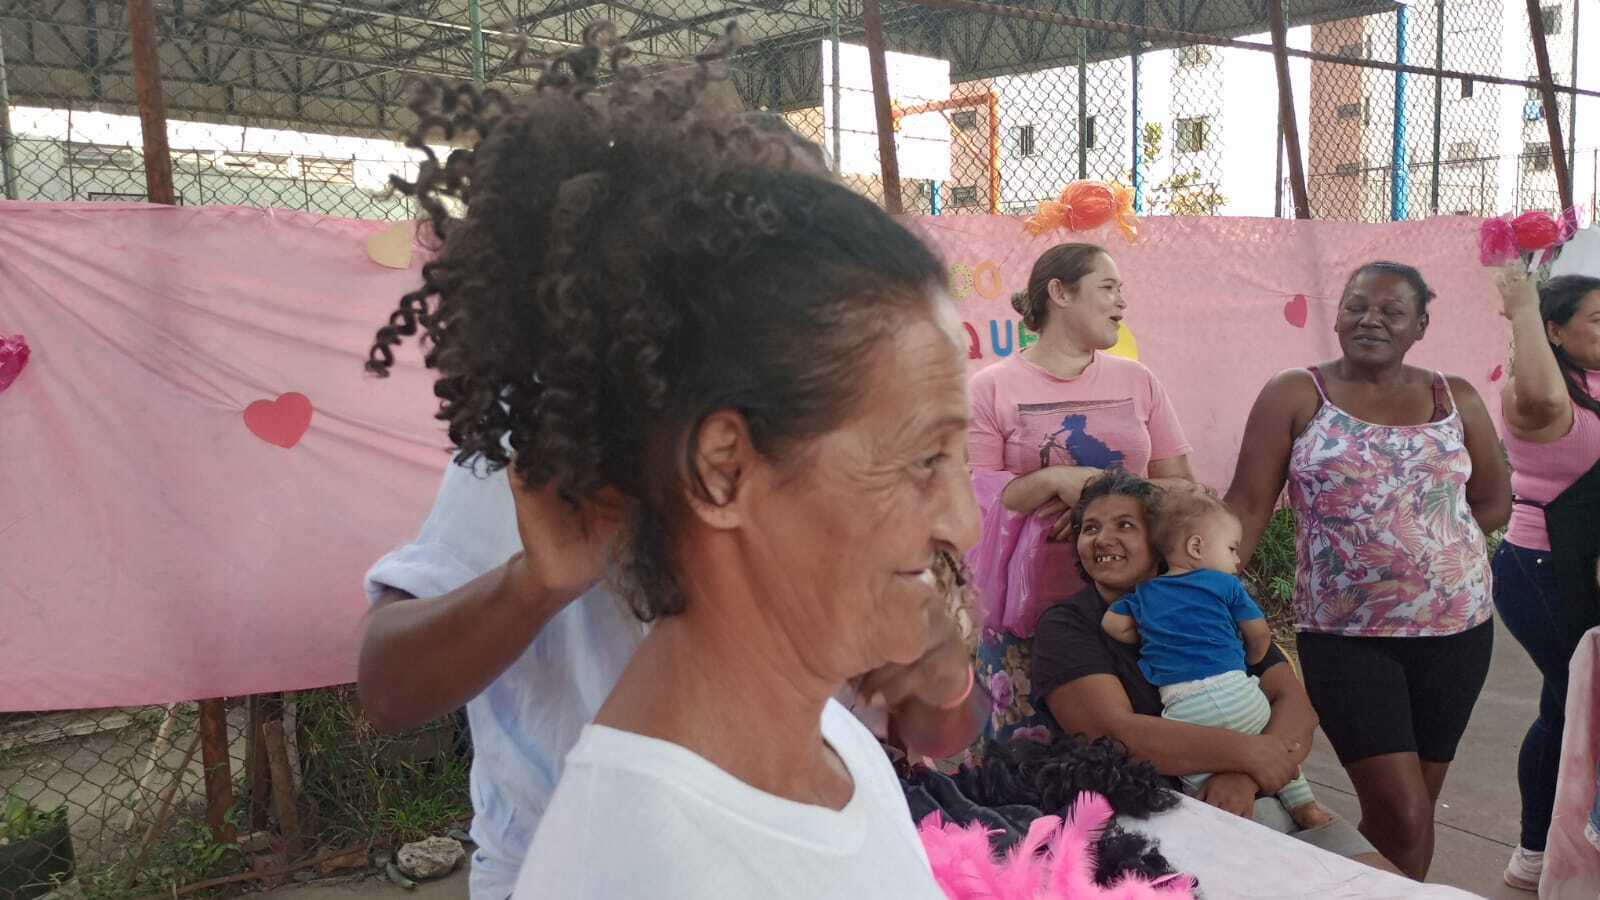 Dona Josefa, está utilizando um aplique de cabelo. Ela está de perfil na imagem, e, outras mulheres estão no fundo observando a oficineira Lígia manipular o aplique no cabelo dela.